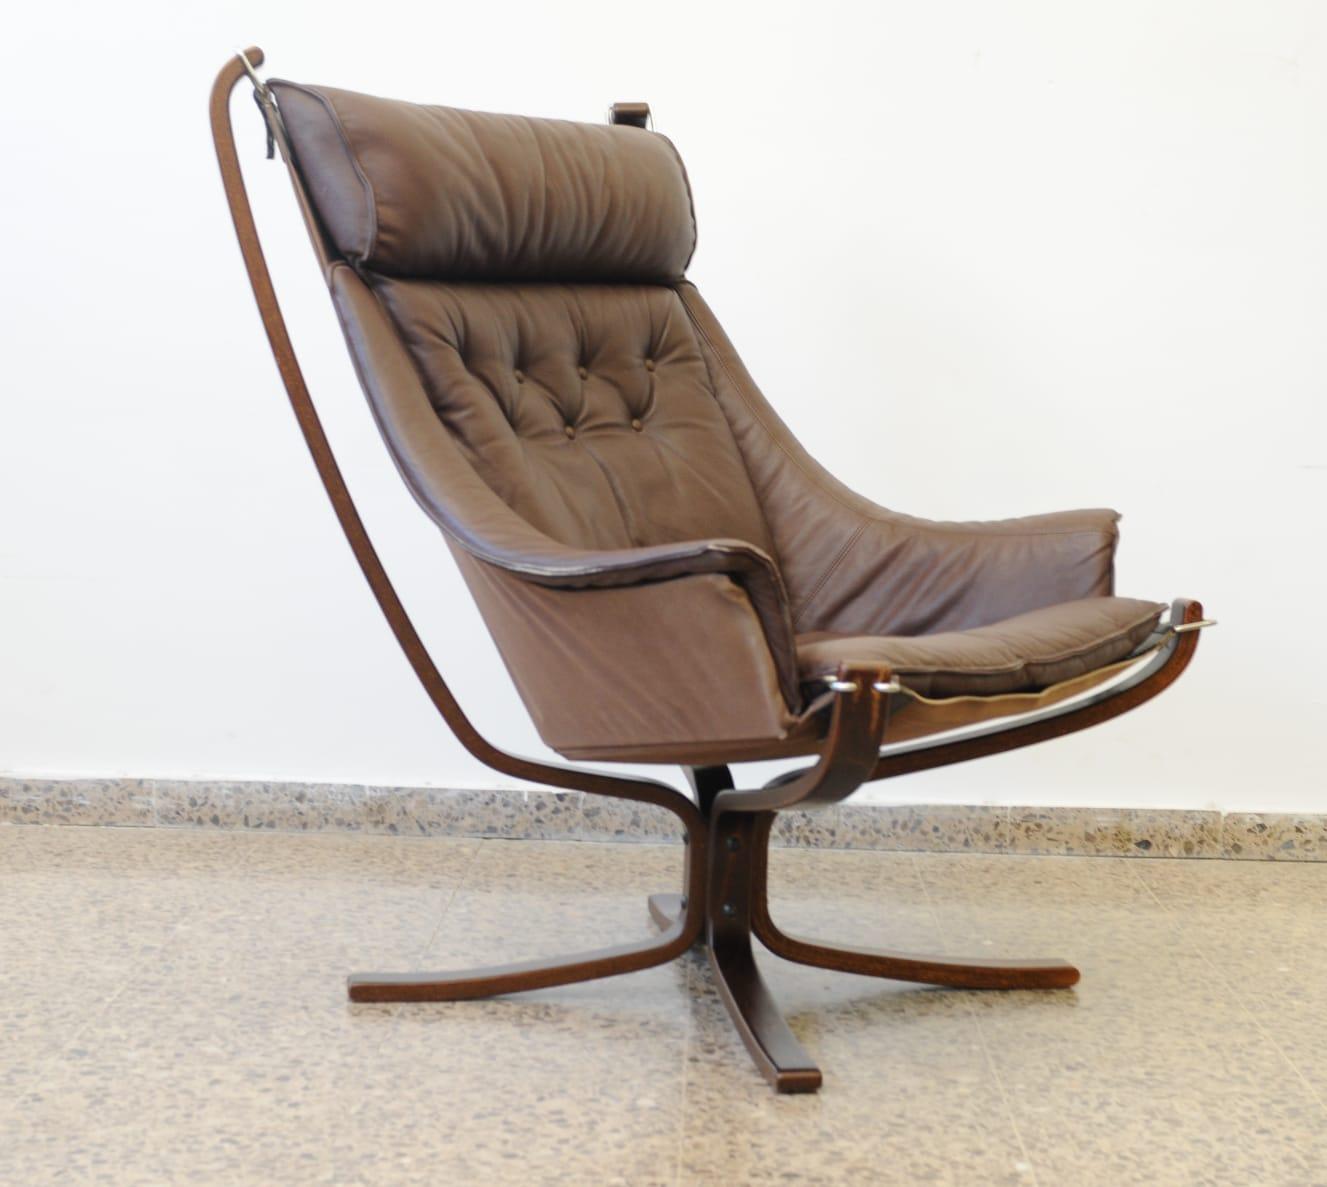 Magnifiques chaises de salon CIRCA de Sigurd Ressell, de conception scandinave, datant du début ou du milieu des années 1970.
